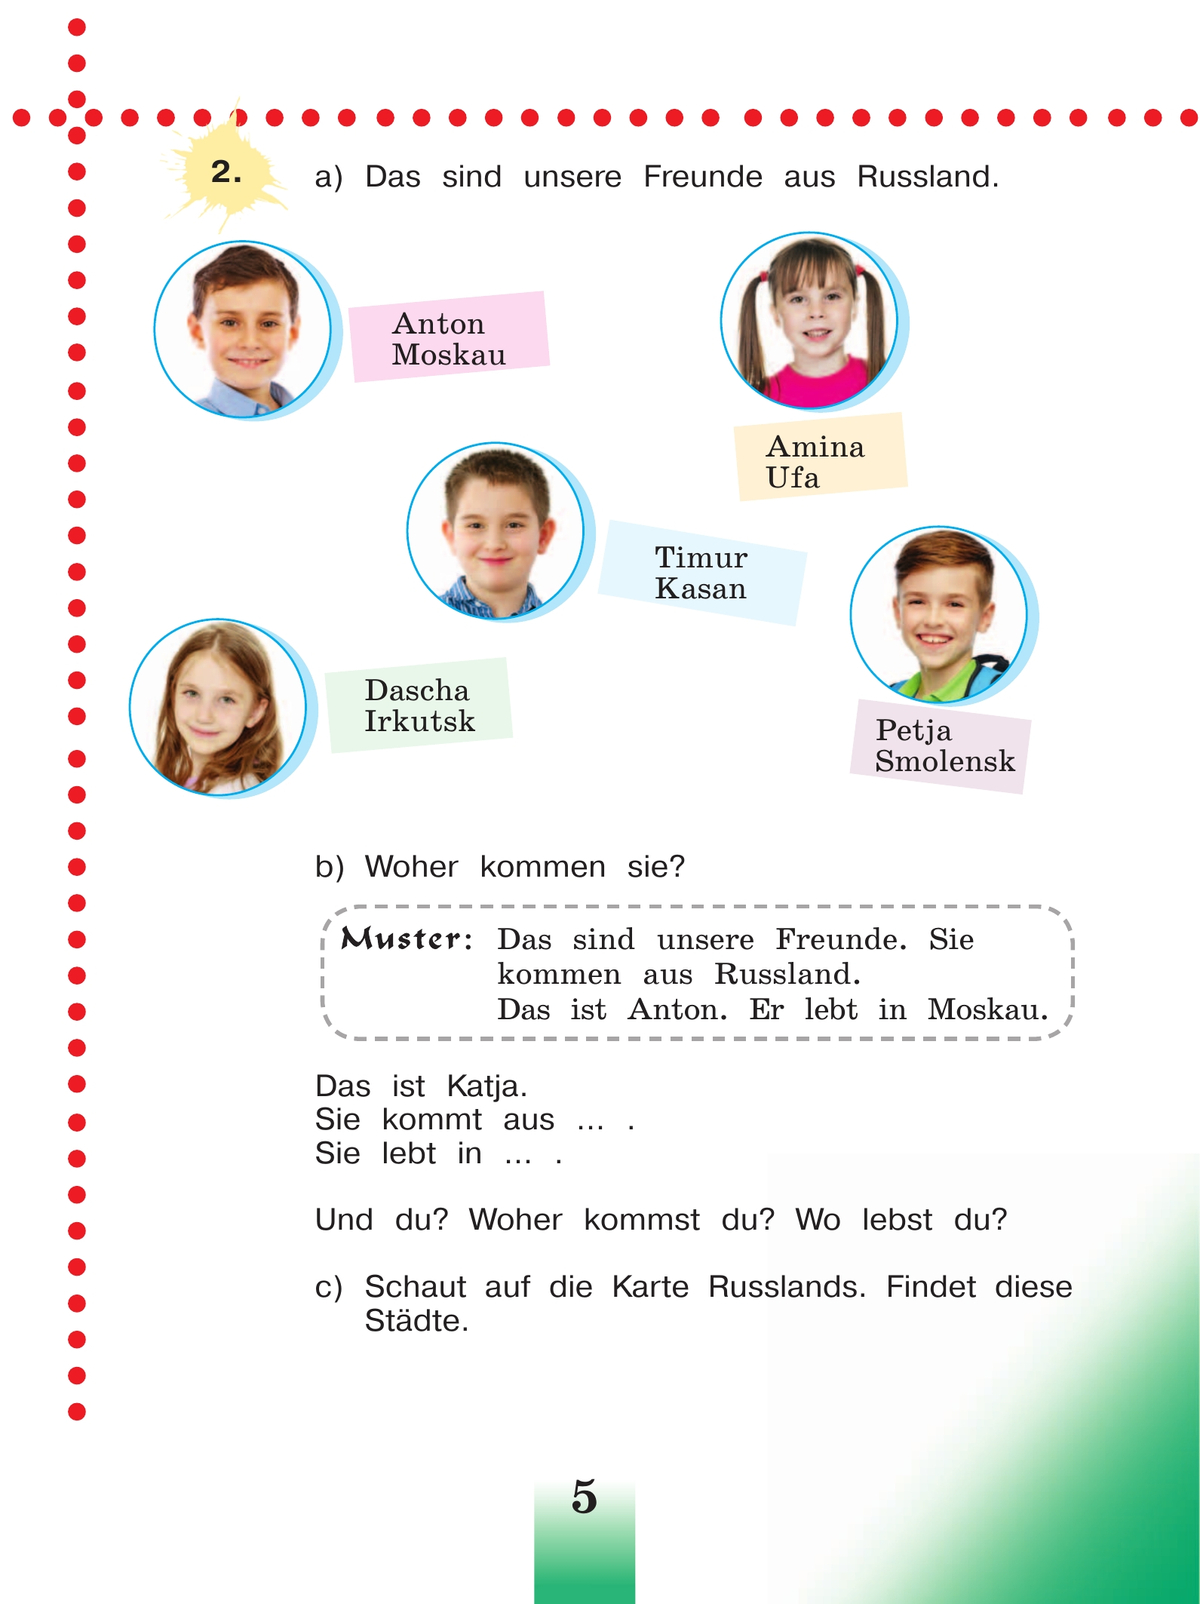 Немецкий язык. 3 класс. Учебник. В 2 ч. Часть 1 4